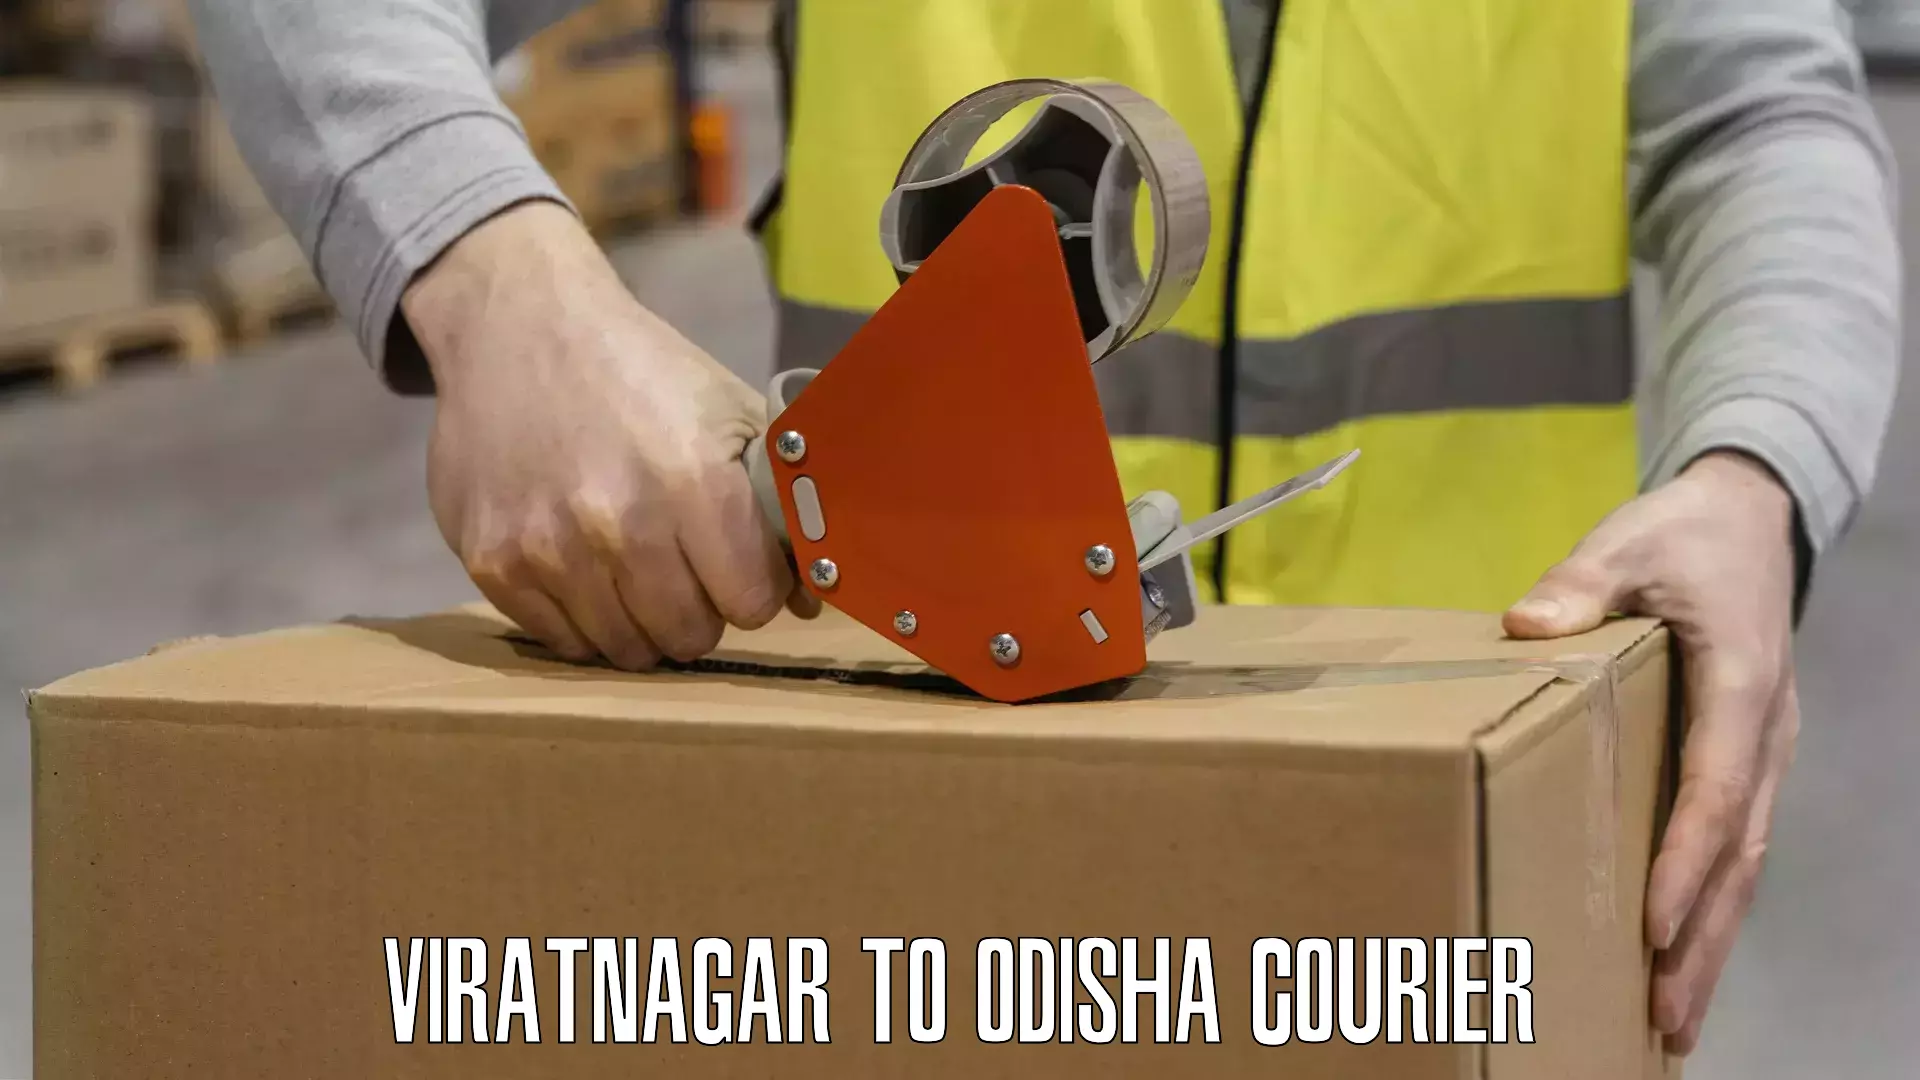 Shipping and handling Viratnagar to Pottangi